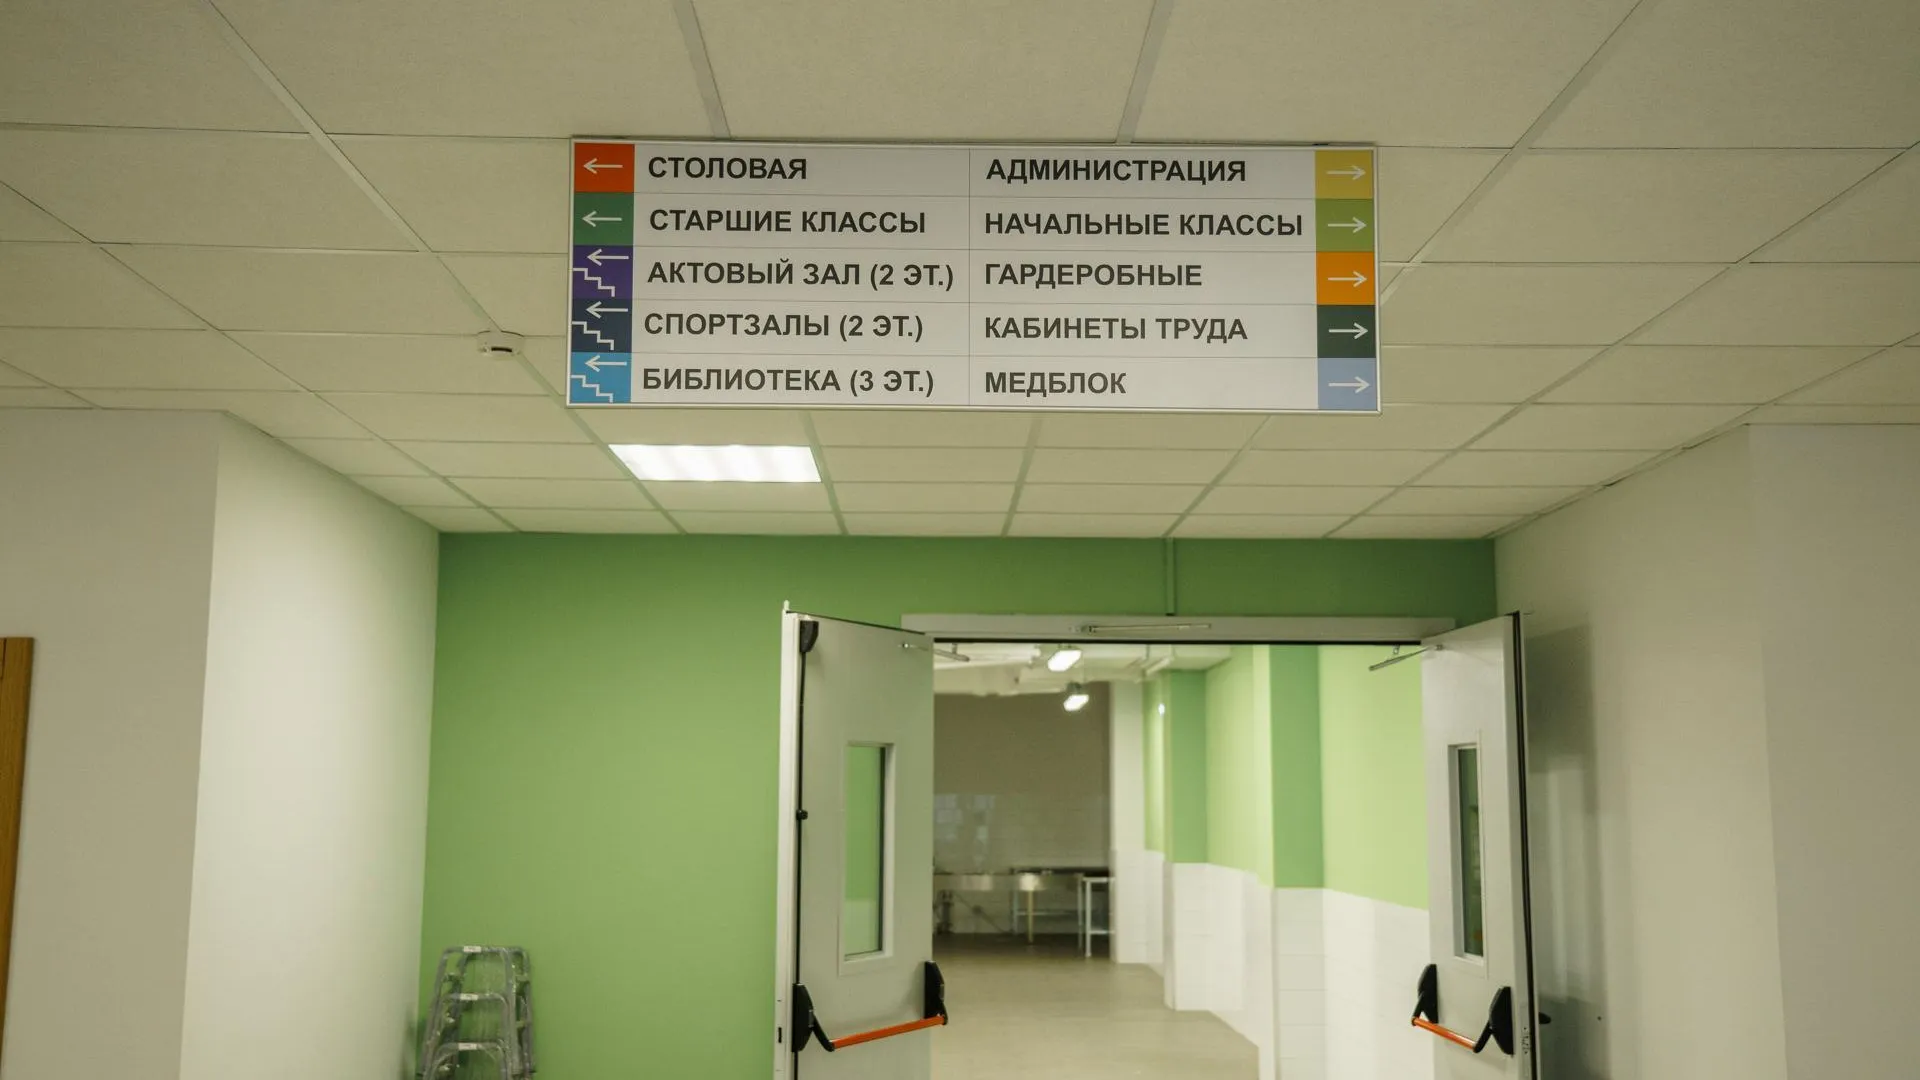 В Орехово-Зуевском округе объявлен конкурс на капитальный ремонт школы